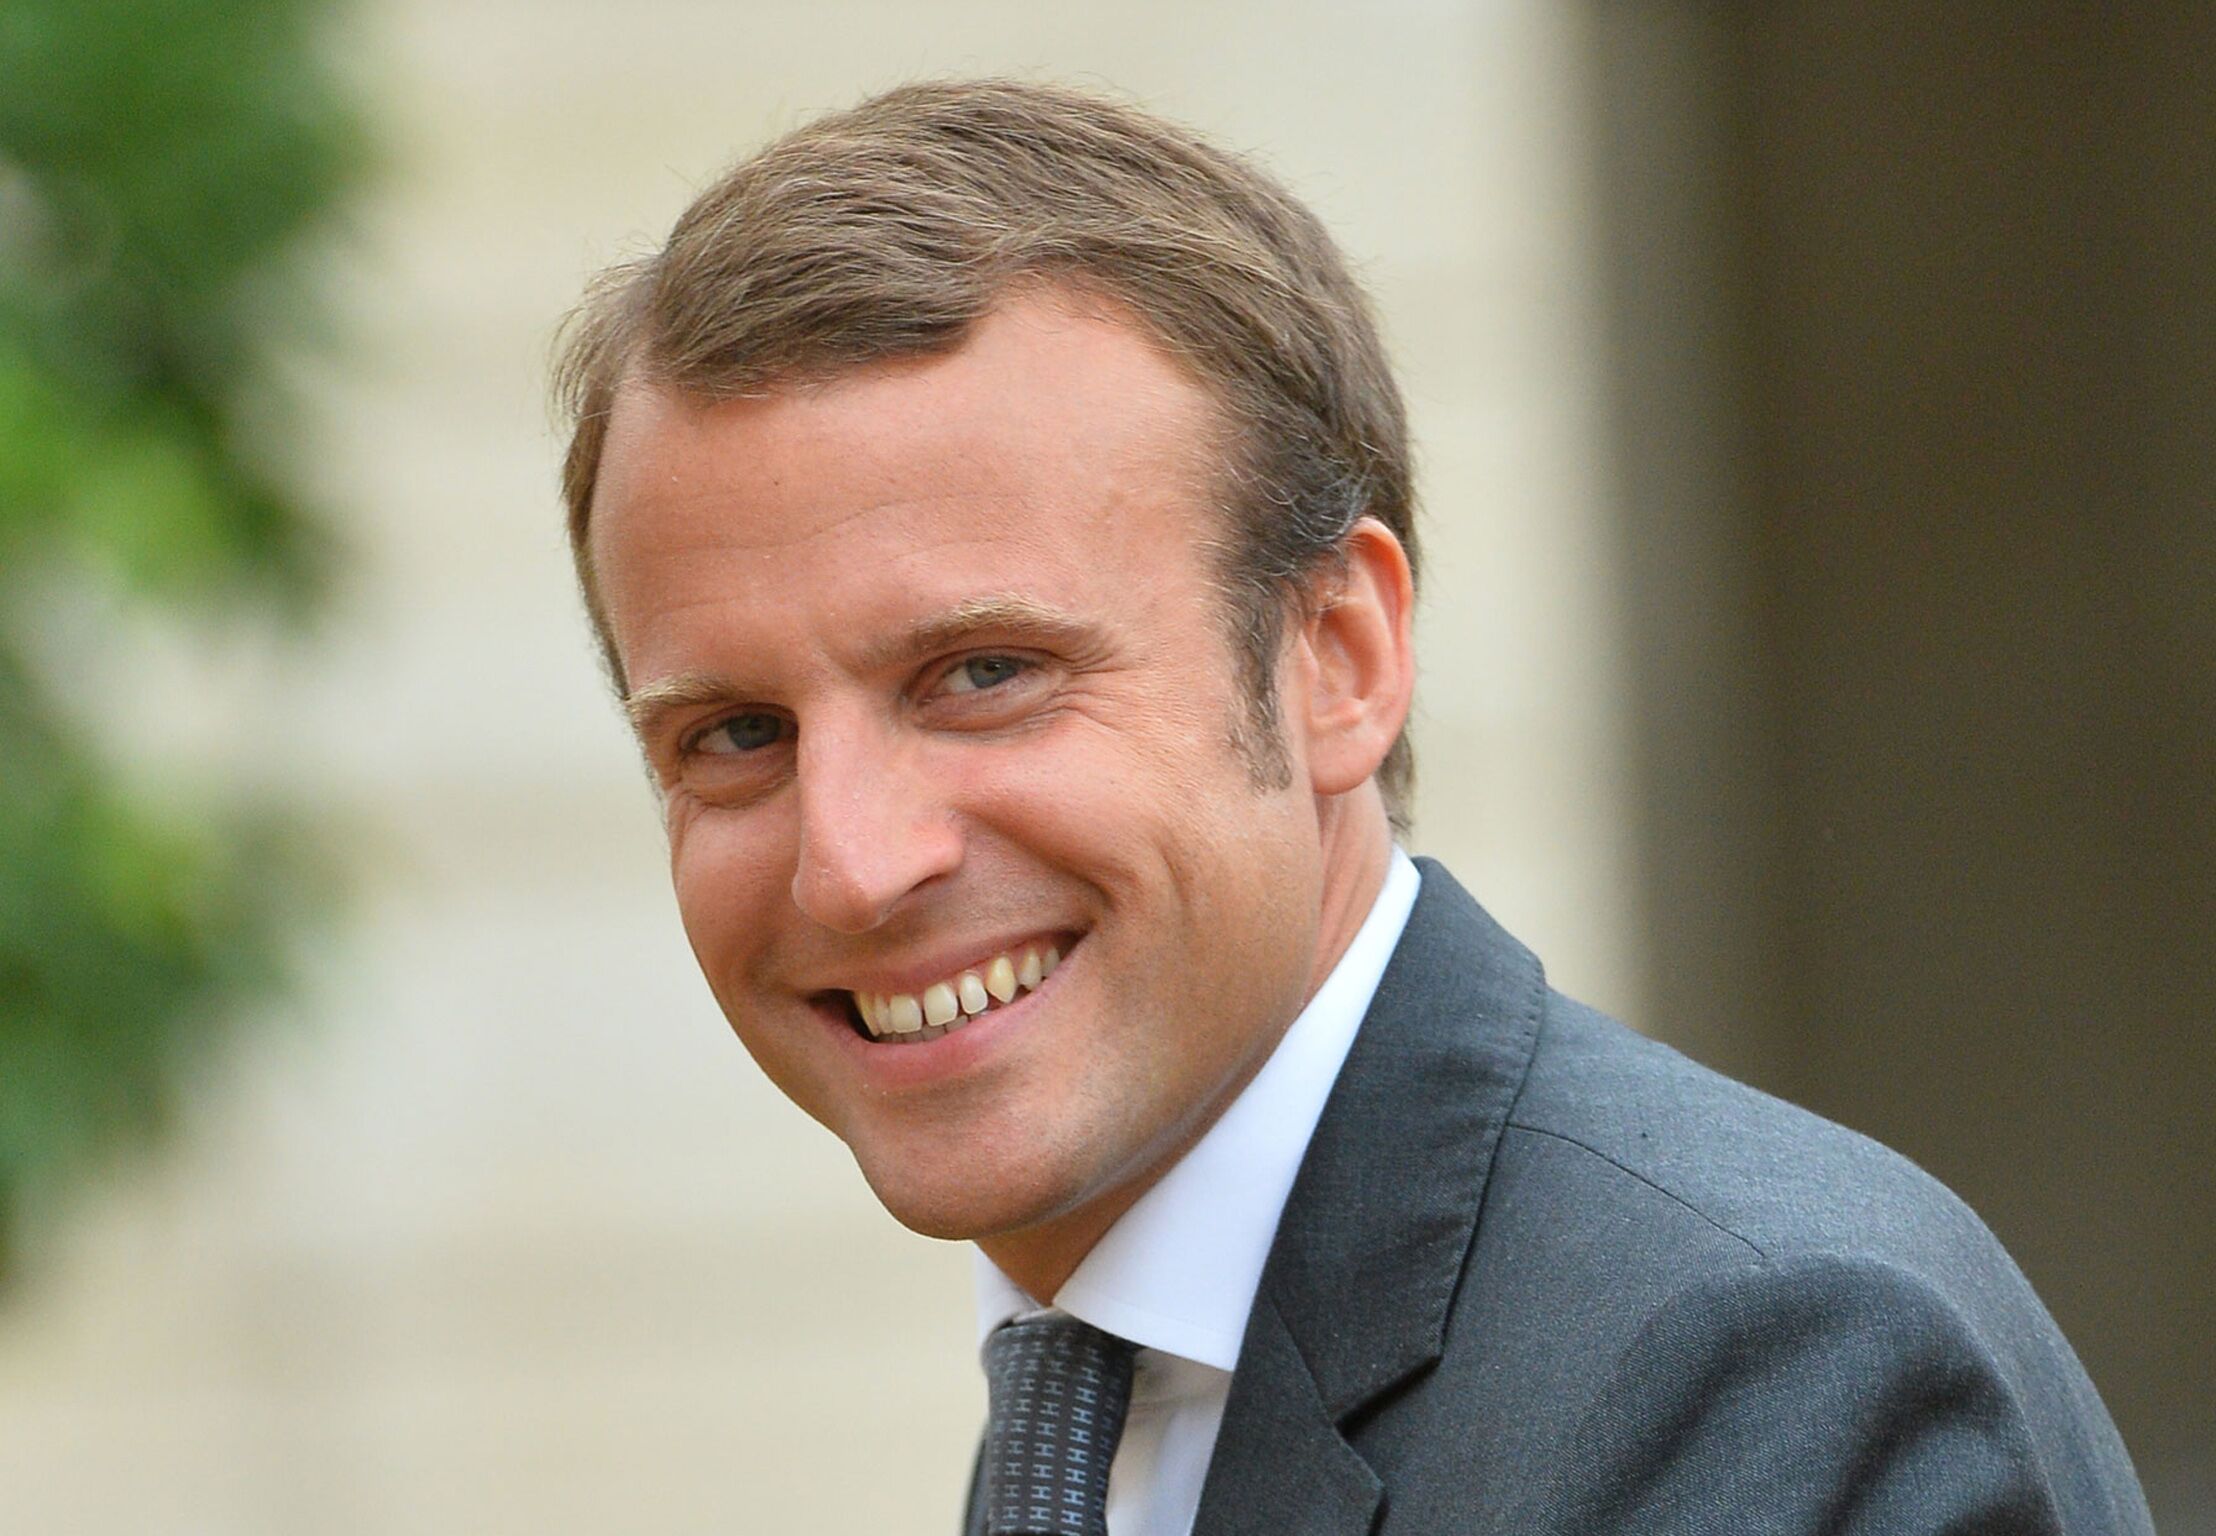 Cette photo d'Emmanuel Macron exhibant son torse poilu moquée par les Américains !